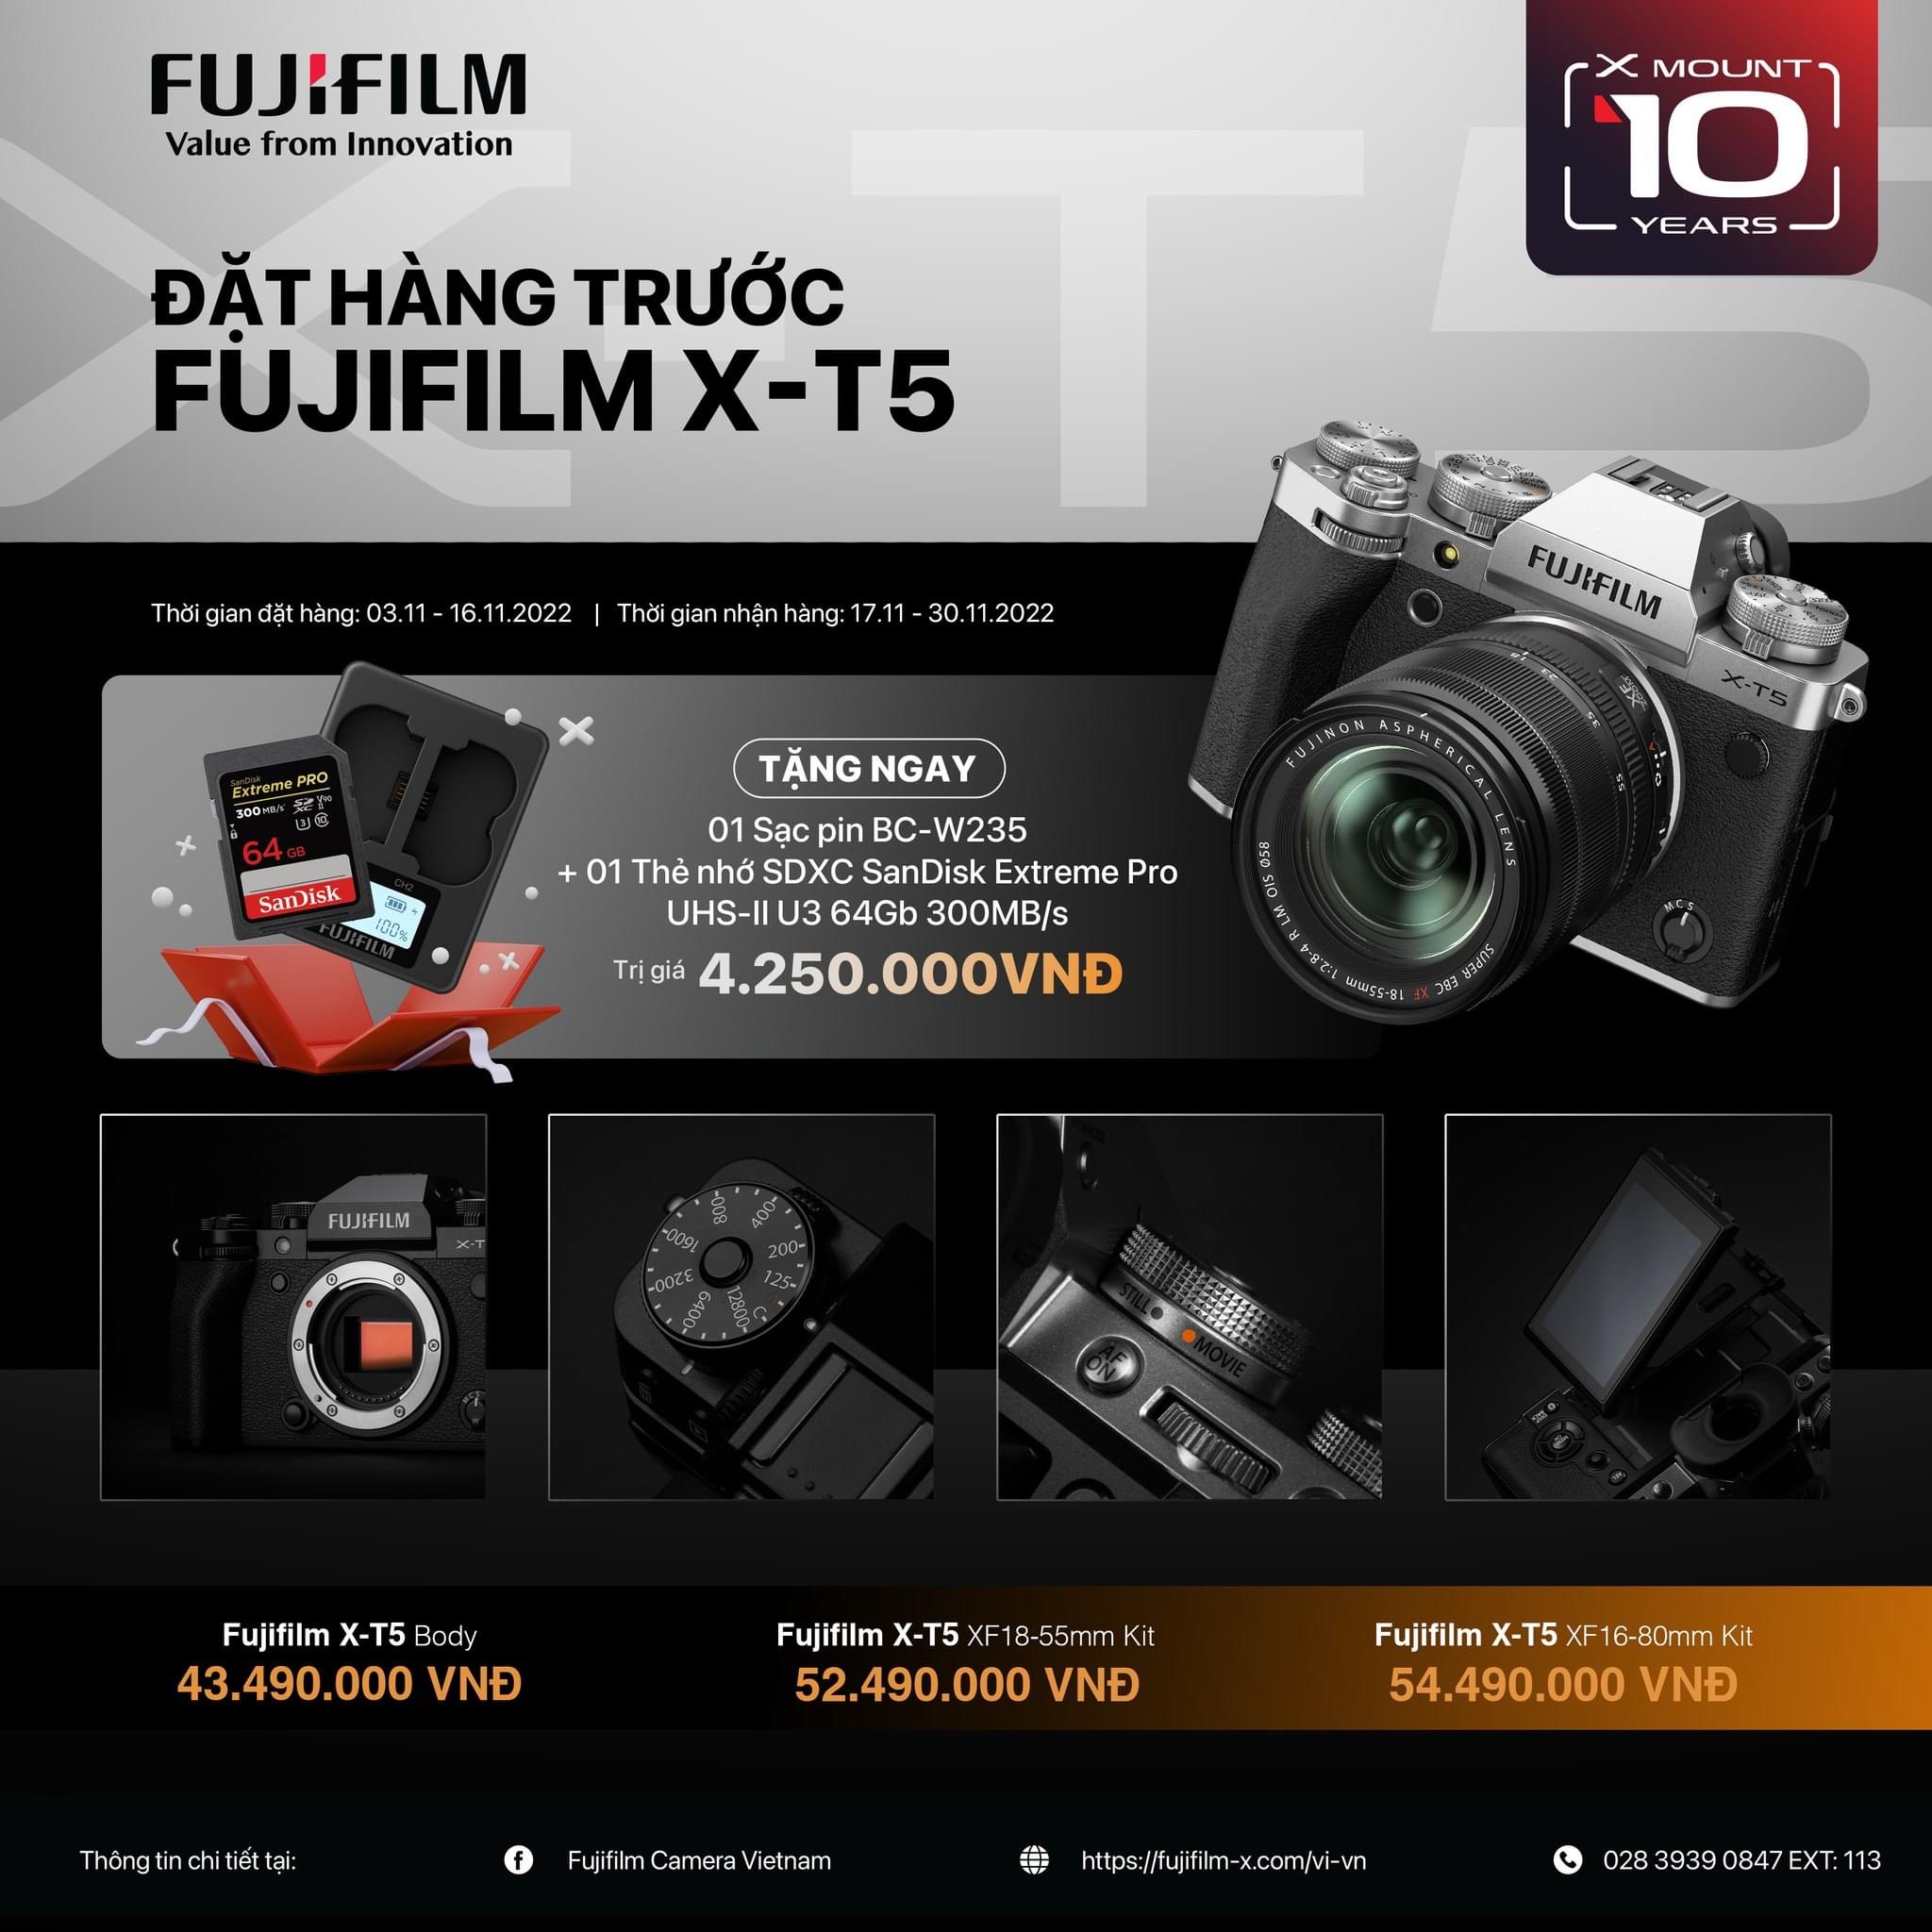 Máy ảnh Fujifilm X-T5 chính thức trao tay khách hàng đặt trước tại WinWinStore